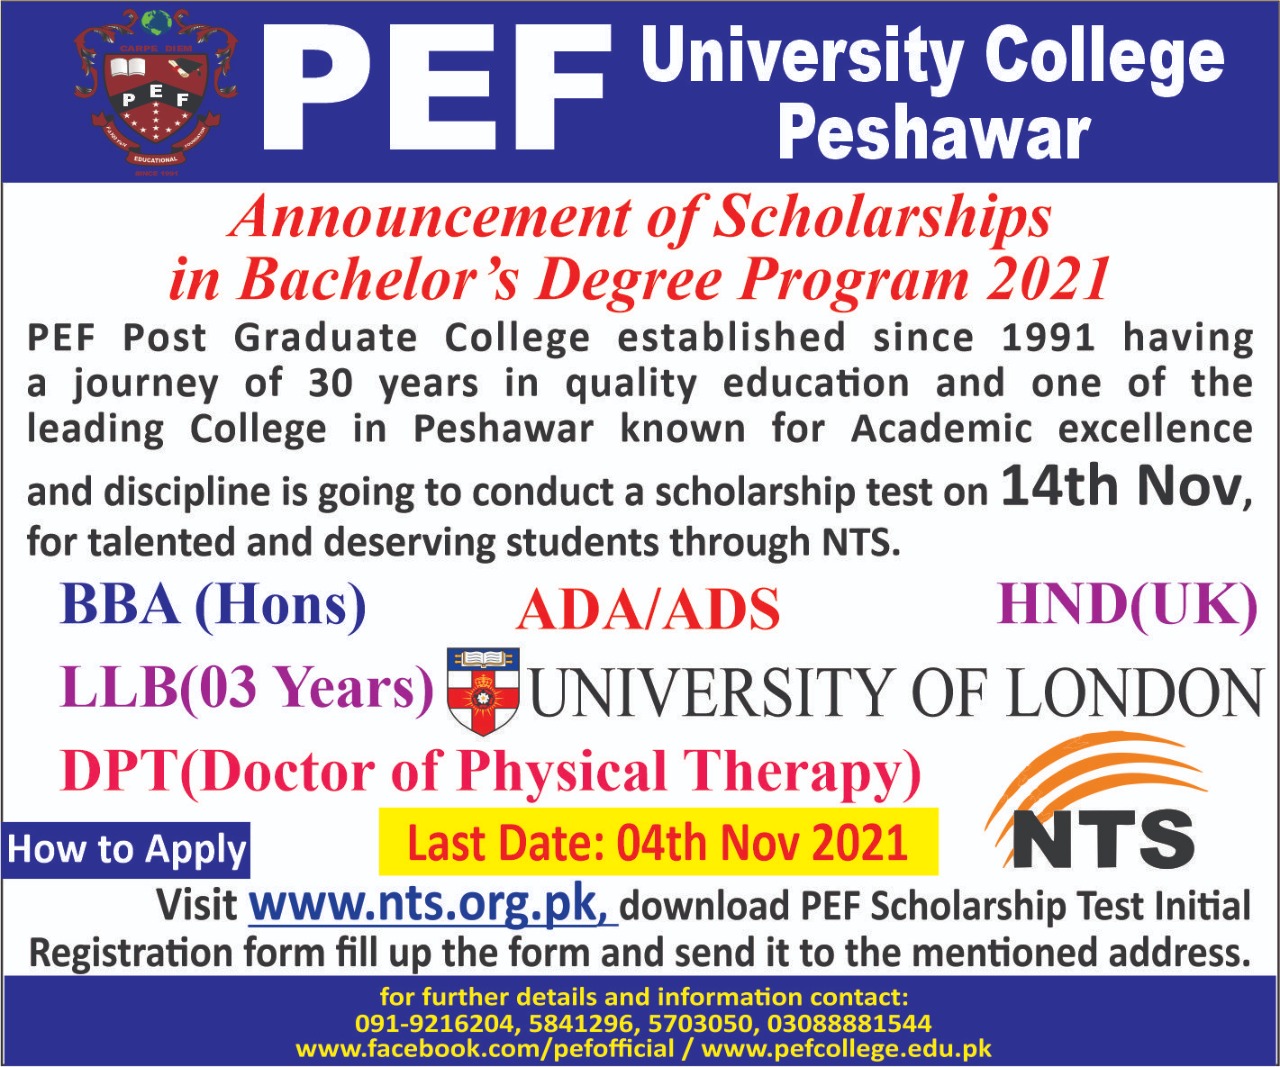 PEF Post Graduate College Scholarship 2021 Last Date